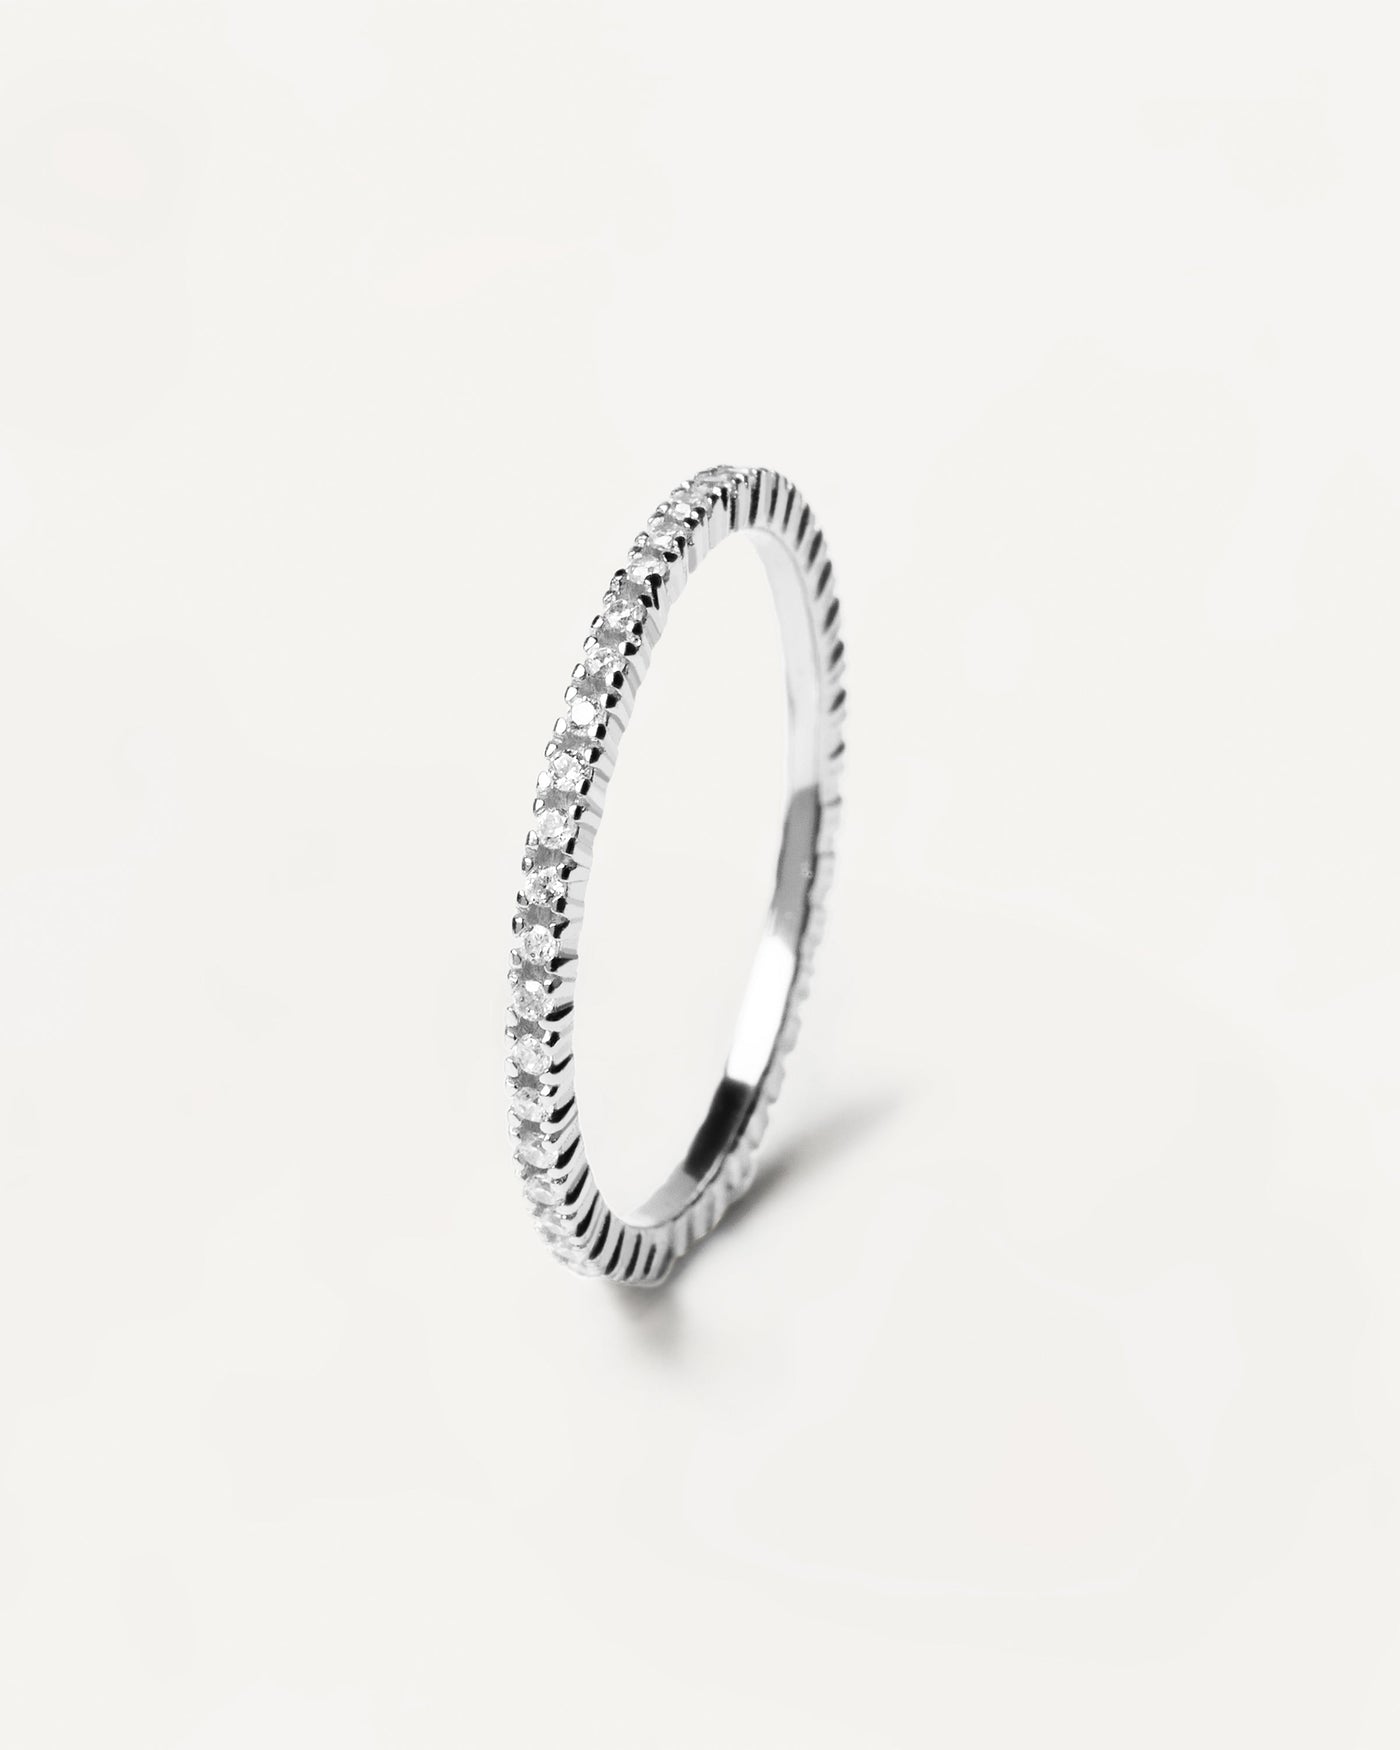 White Essential Silberring. 925 sterling silver ring vollständig mit weißem zirkonia-besatz. Erhalten Sie die neuesten Produkte von PDPAOLA. Geben Sie Ihre Bestellung sicher auf und erhalten Sie diesen Bestseller.